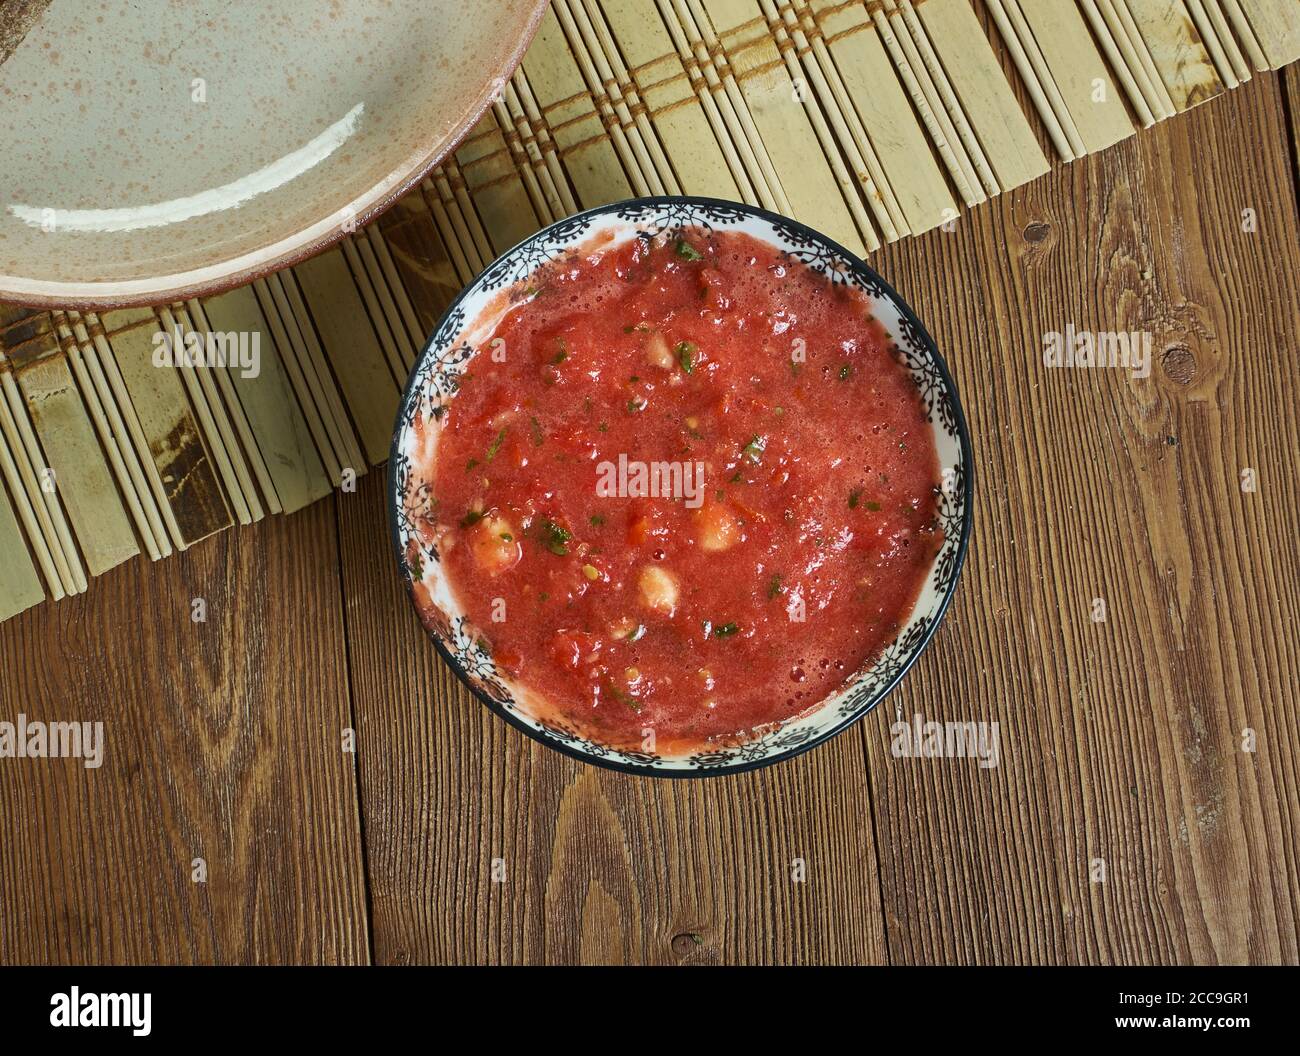 Salsa di giorno pigra - salsa di pomodoro classica. Cibo messicano Foto Stock